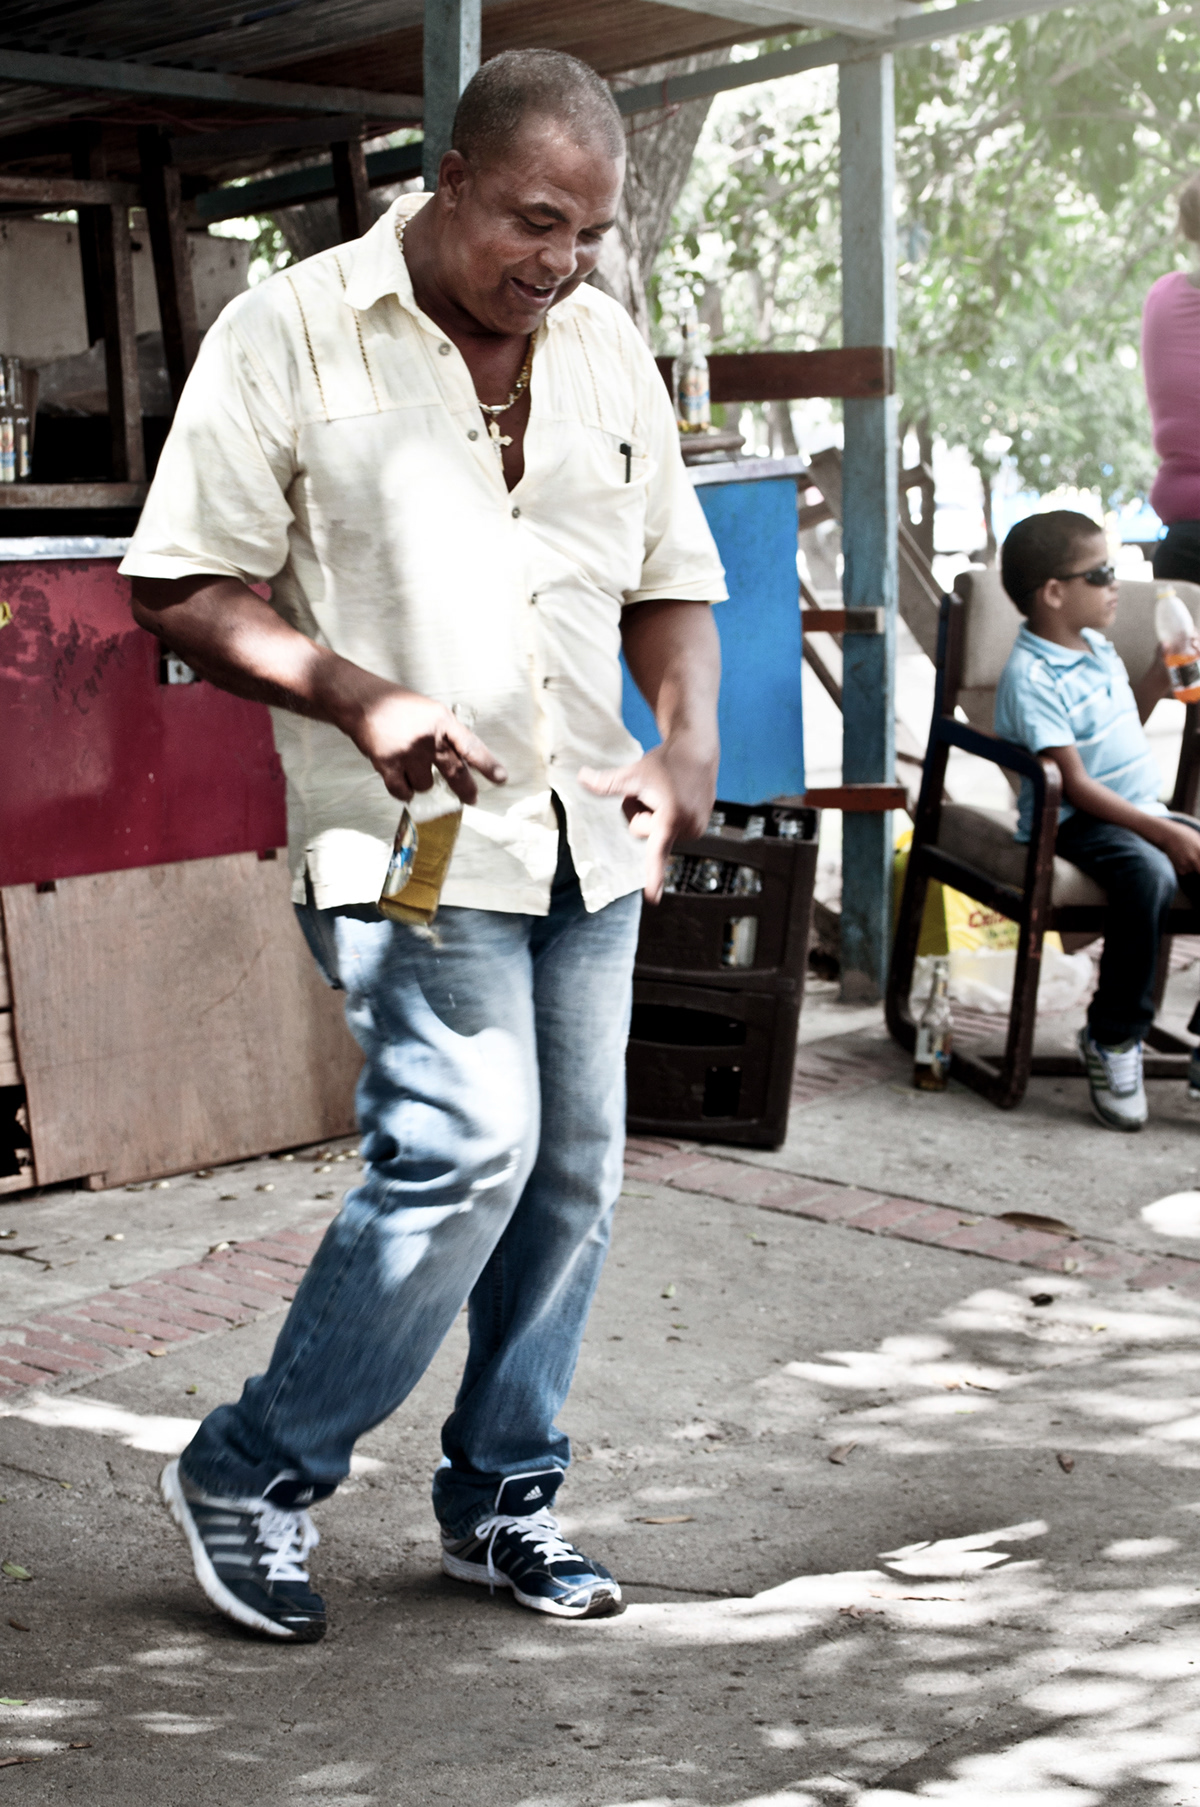 mira al centro  ciudad  barranquilla  portrait oficios  fotomaratón  gente tabaco  calles  fotoreportaje social